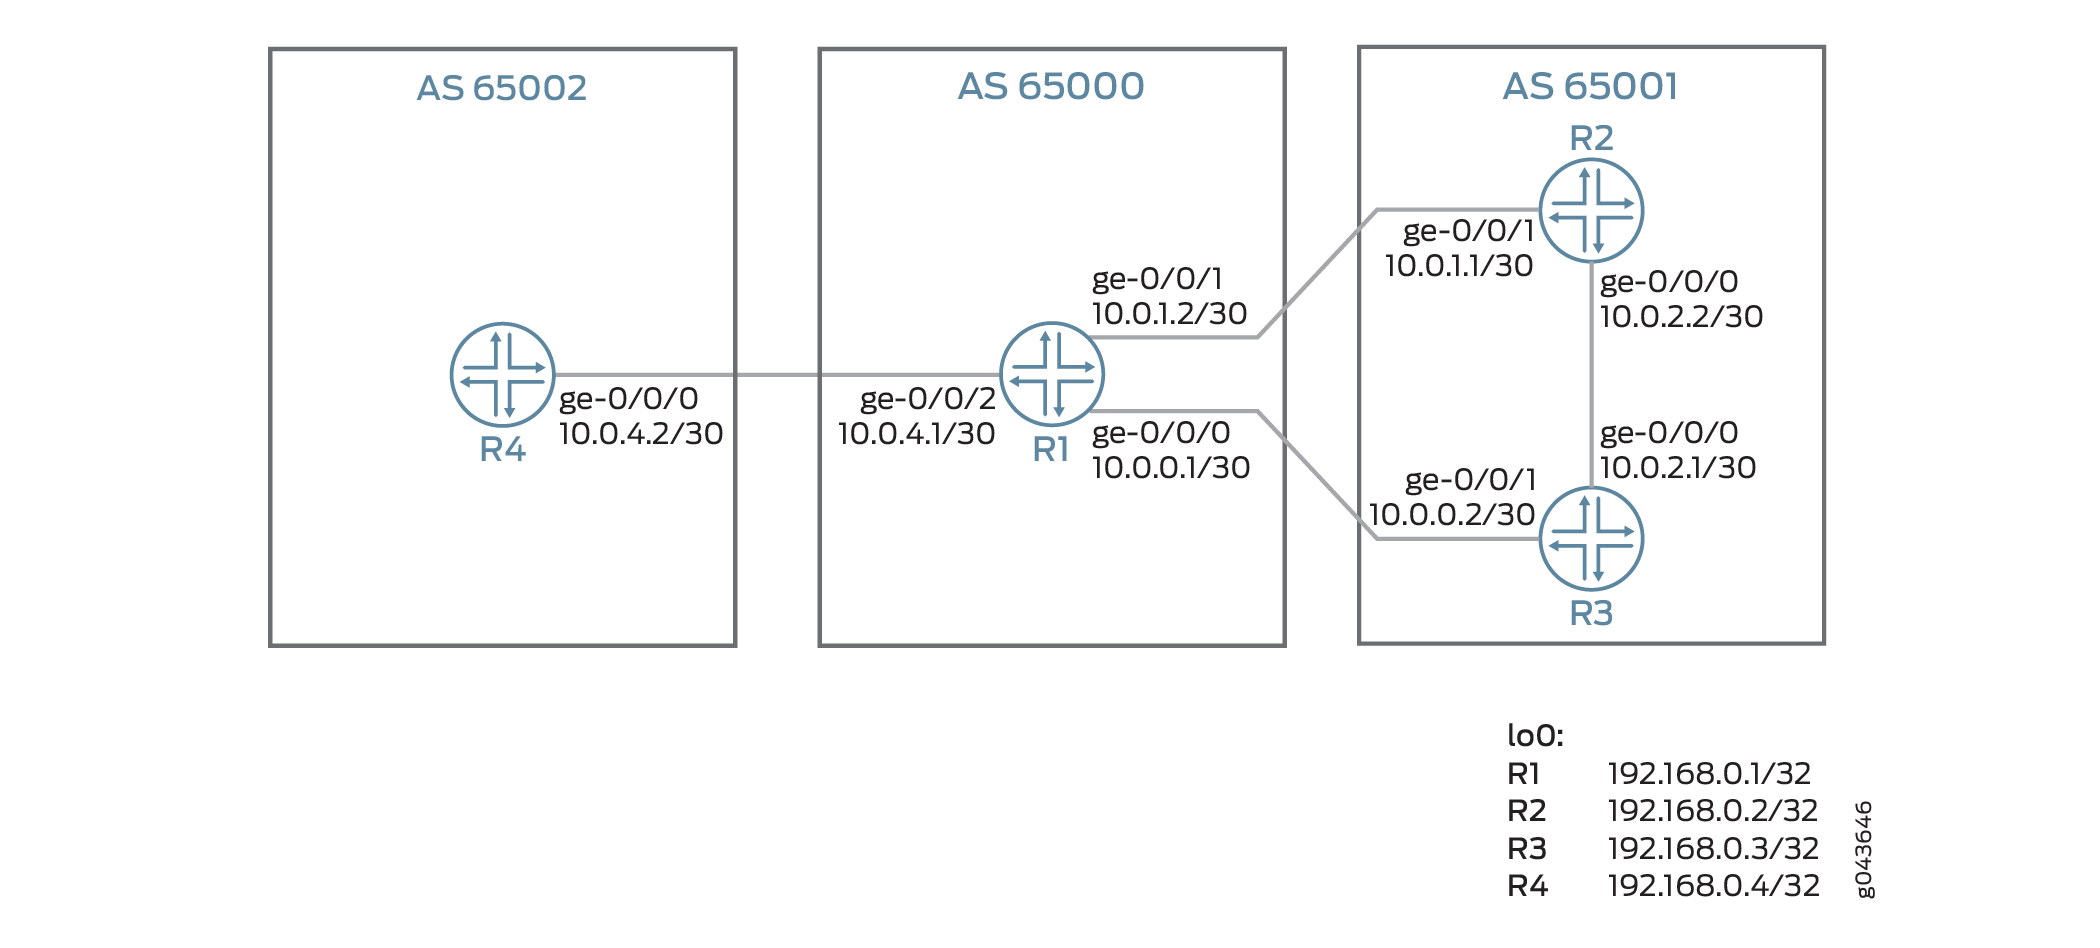 配置策略以跨外部 BGP 链路播发聚合带宽，以实现负载平衡